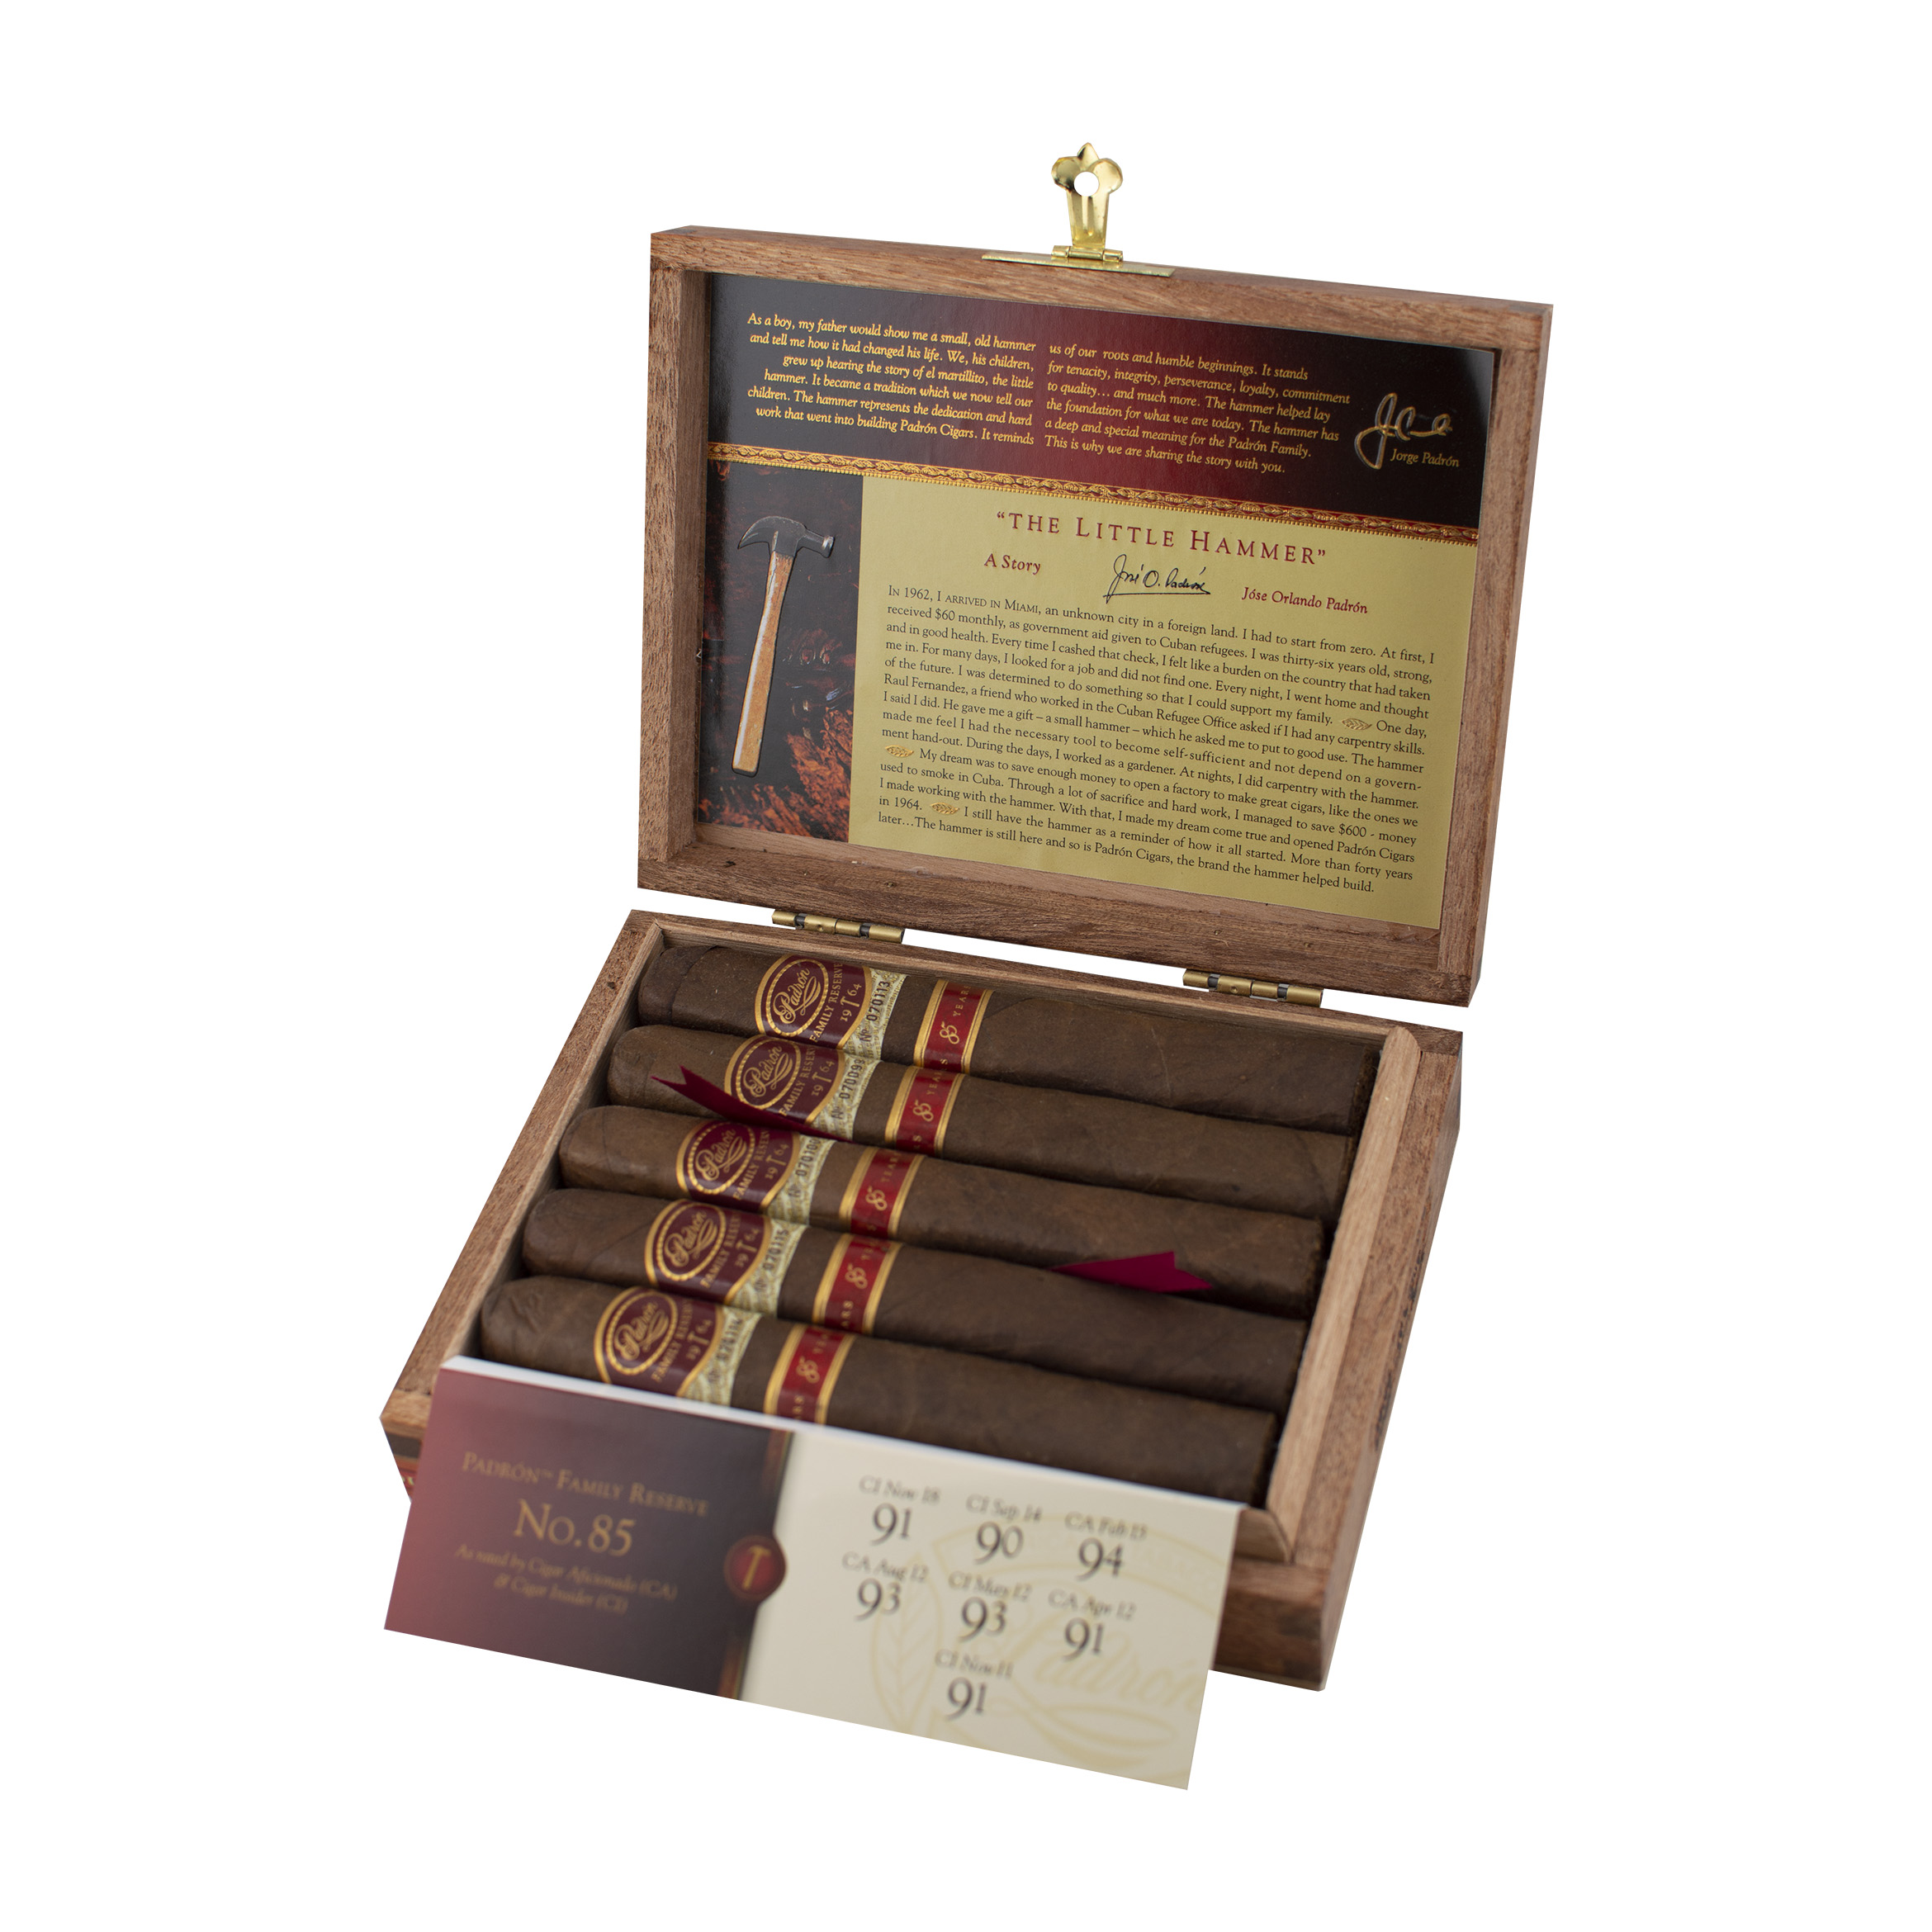 Padron Family Reserve No. 85 Maduro Robusto Cigar - Box